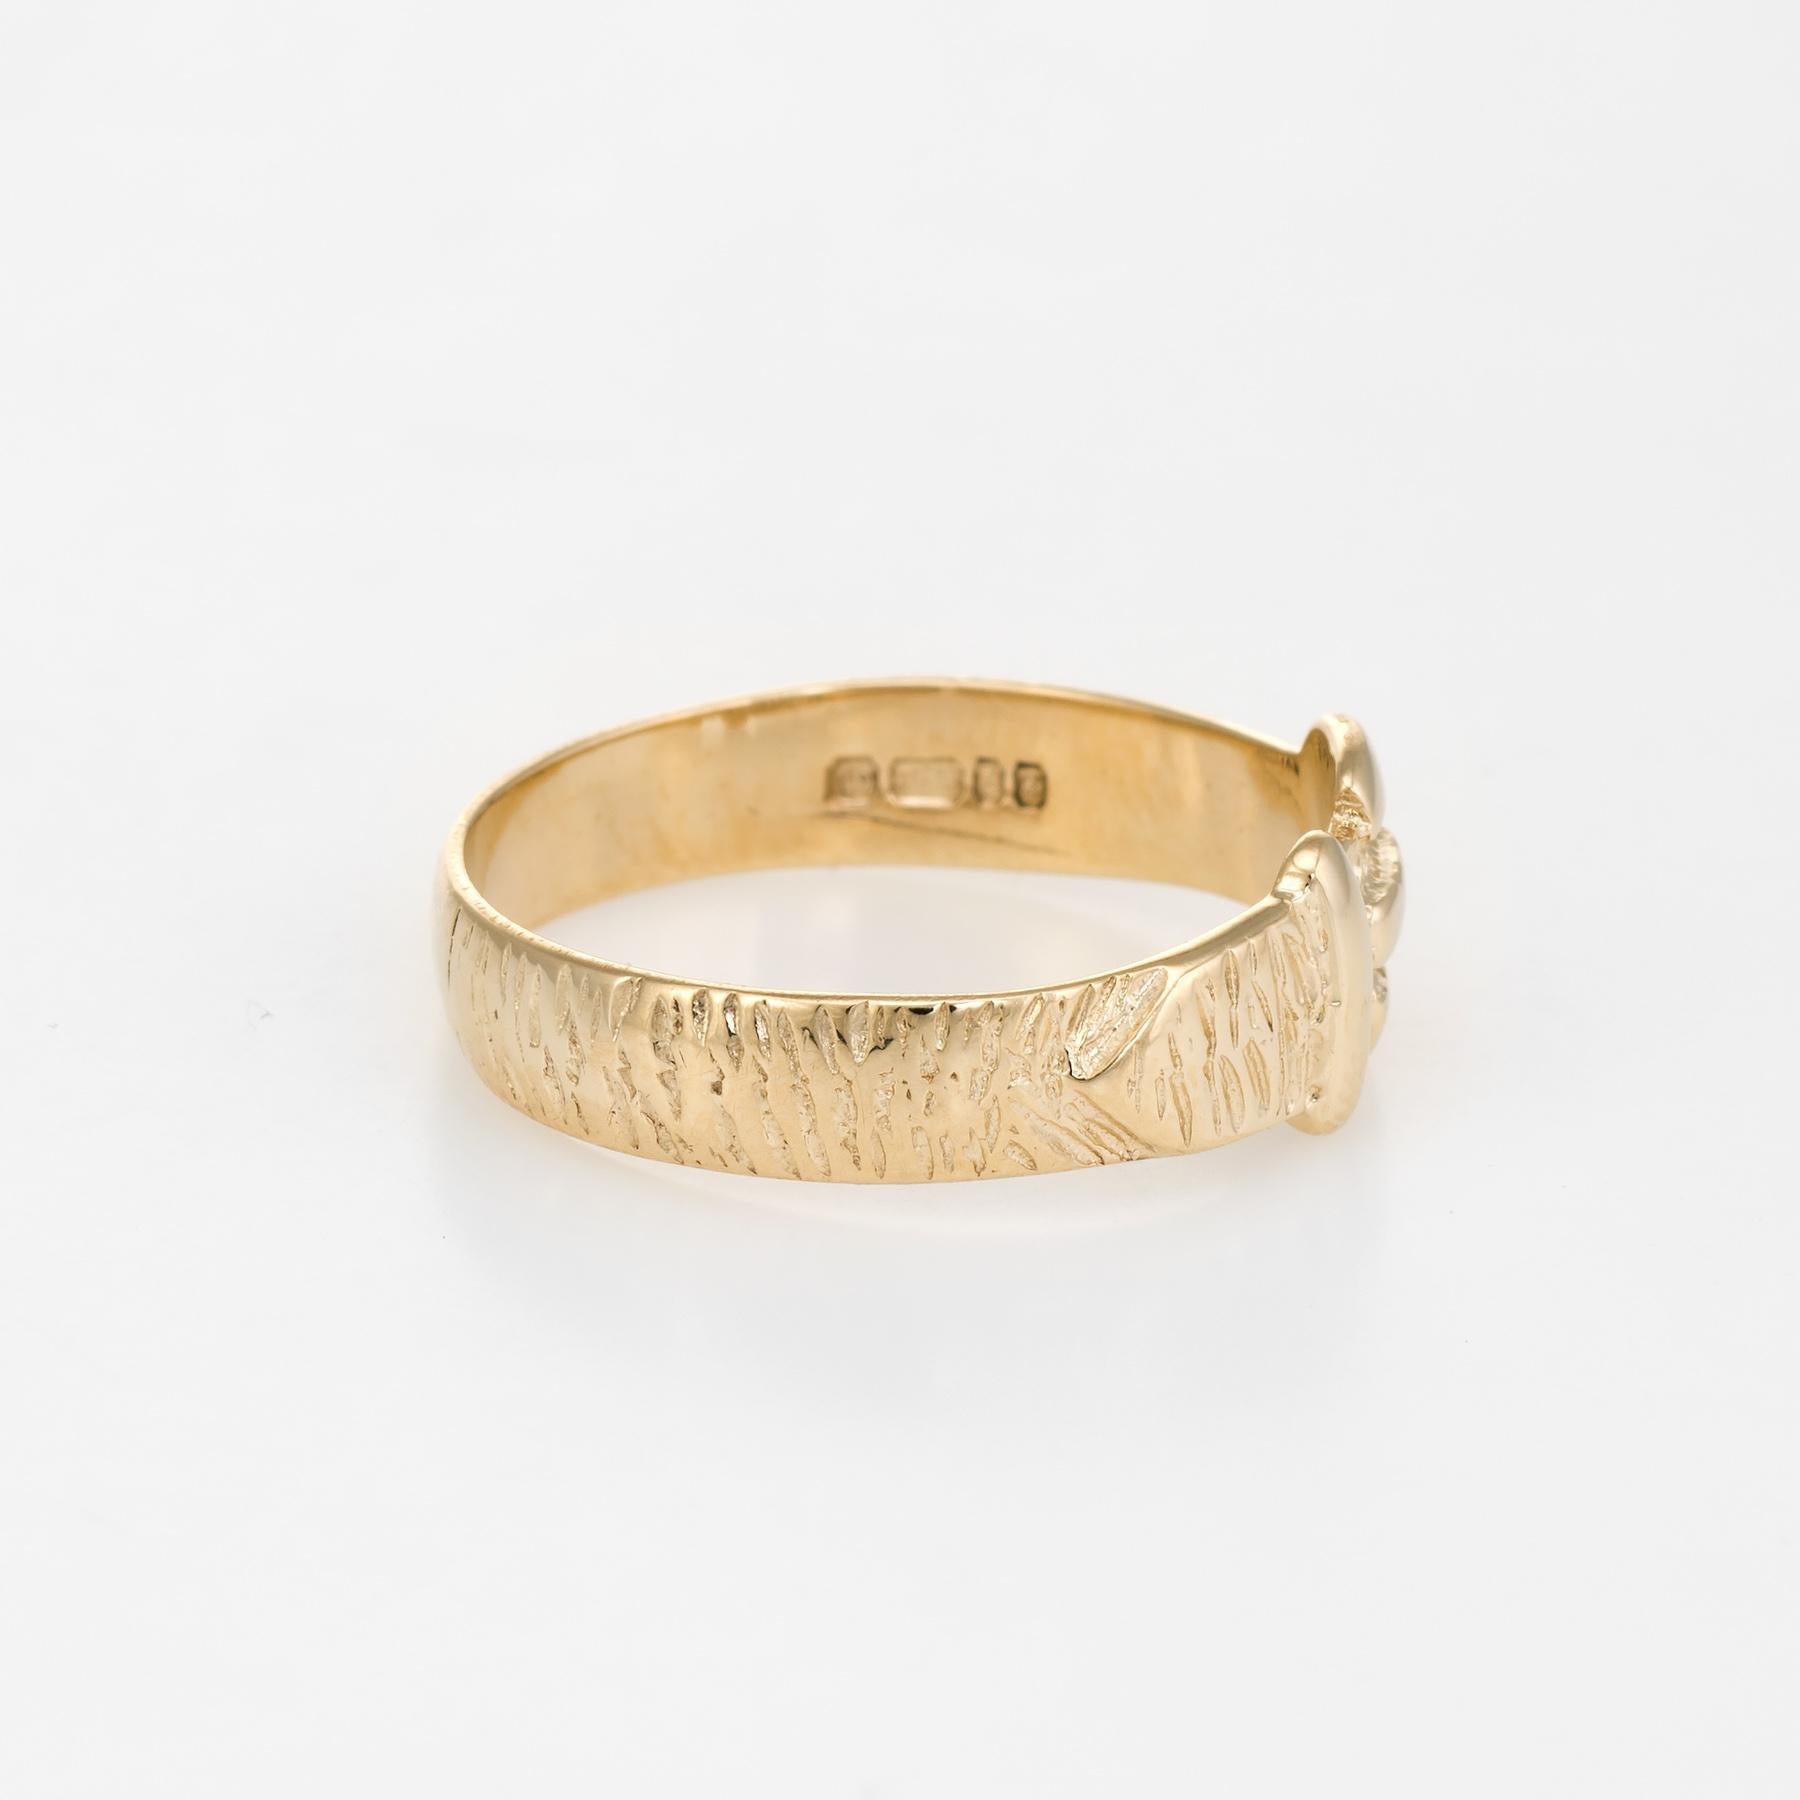 Modern Vintage Buckle Ring 9 Karat Gold Belt Stacking Ring circa 1979 English Jewelry